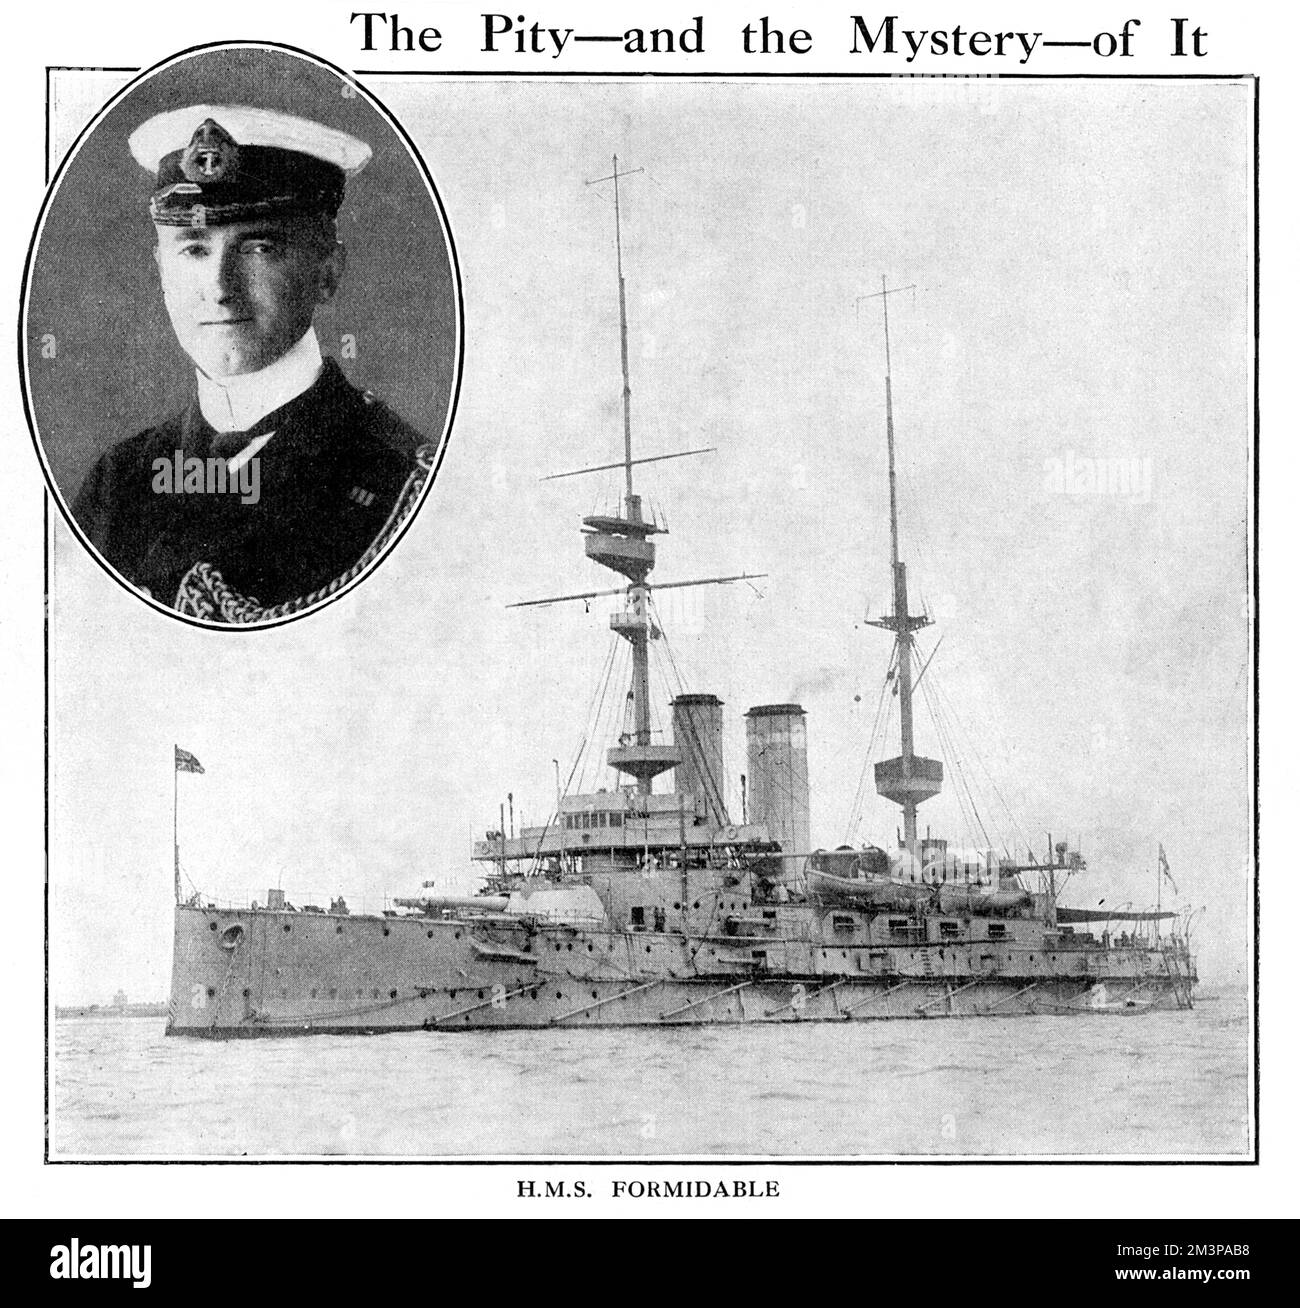 HMS FORMIDIABLE, ein britisches Schlachtschiff, versenkt von deutschen Torpedos im Ärmelkanal während des Ersten Weltkriegs am 1.. Januar 1915. Eine Inset zeigt Captain Arthur N. Loxley, der starb, als das Schiff sank. Datum: 1915 Stockfoto